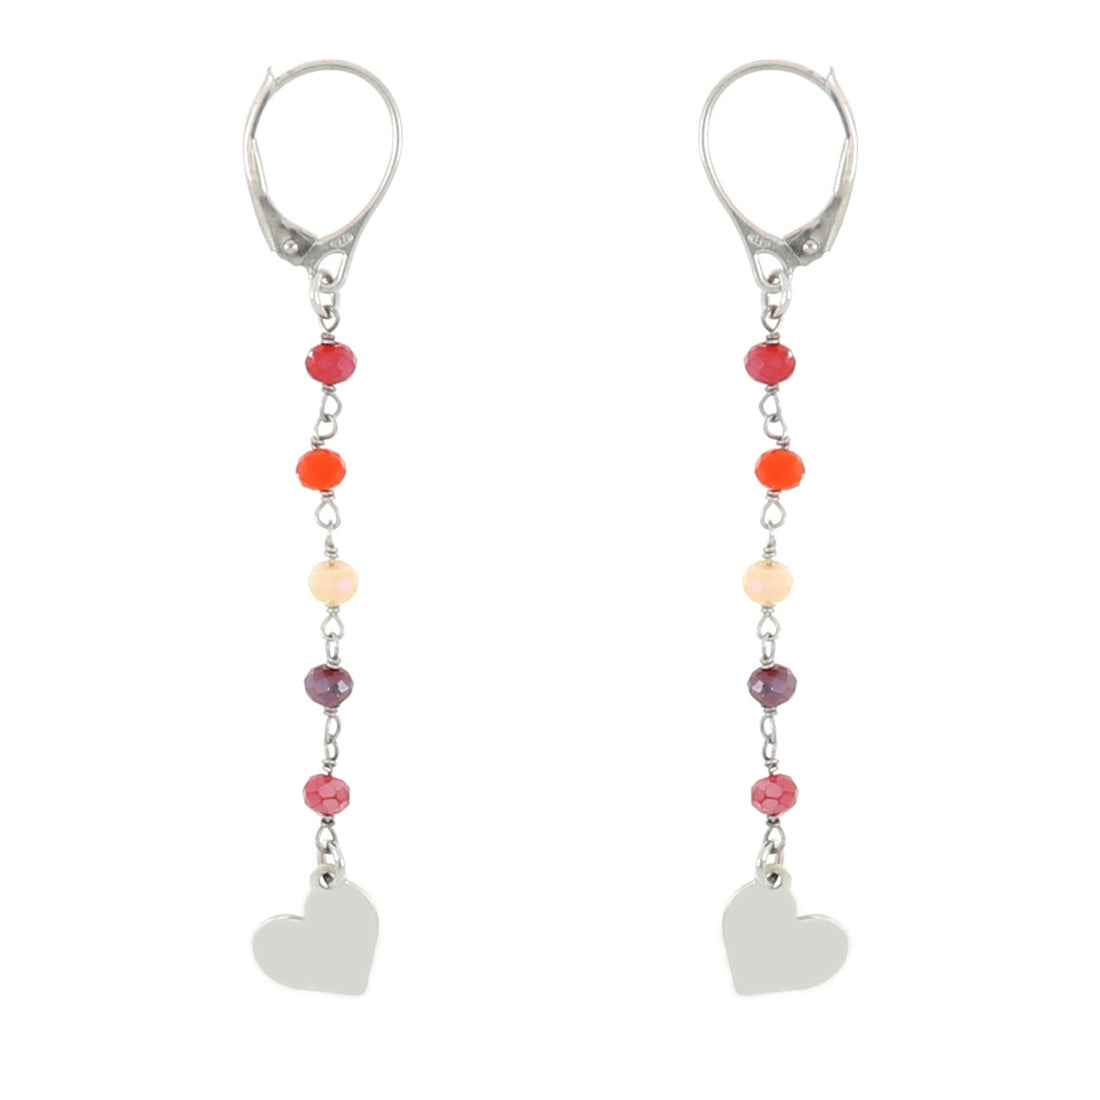 Orecchino con rosario multicolor (perline arancio, rosso, viola e beige) e pendente cuore finale in argento 925